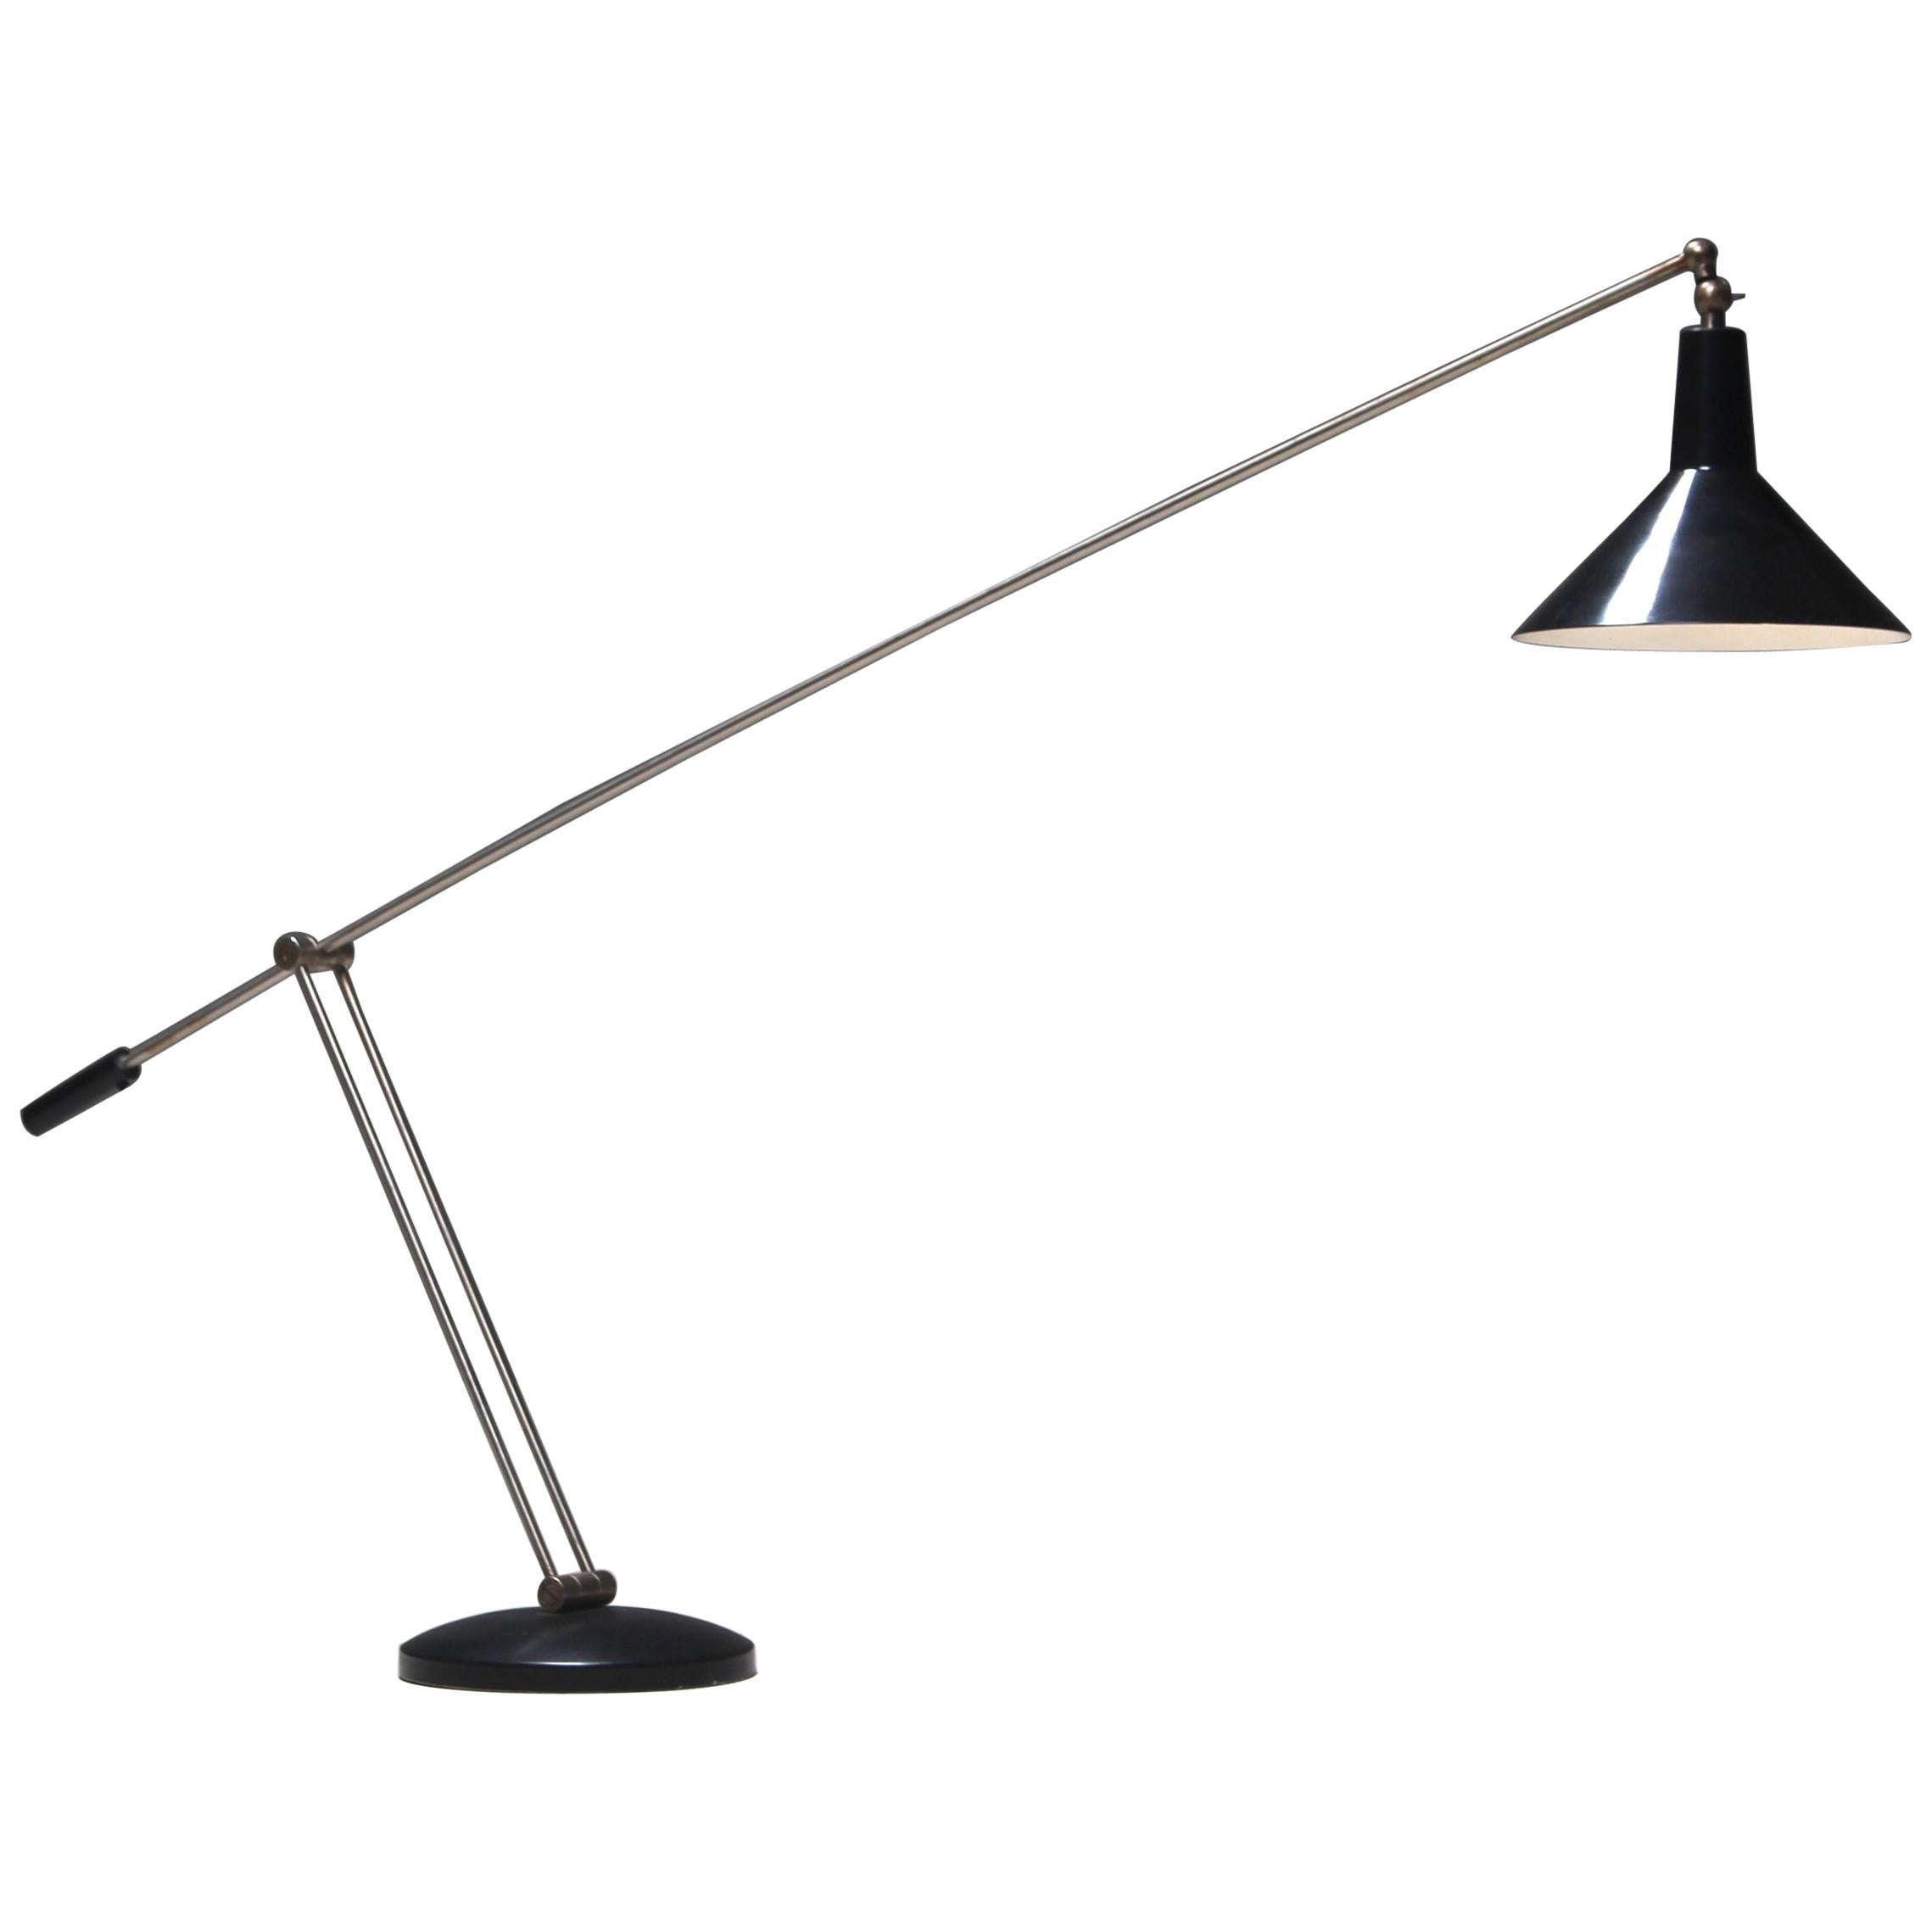 Rare Adjustable Floor Lamp by J.J.M. Hoogervorst for Anvia, the Netherlands For Sale